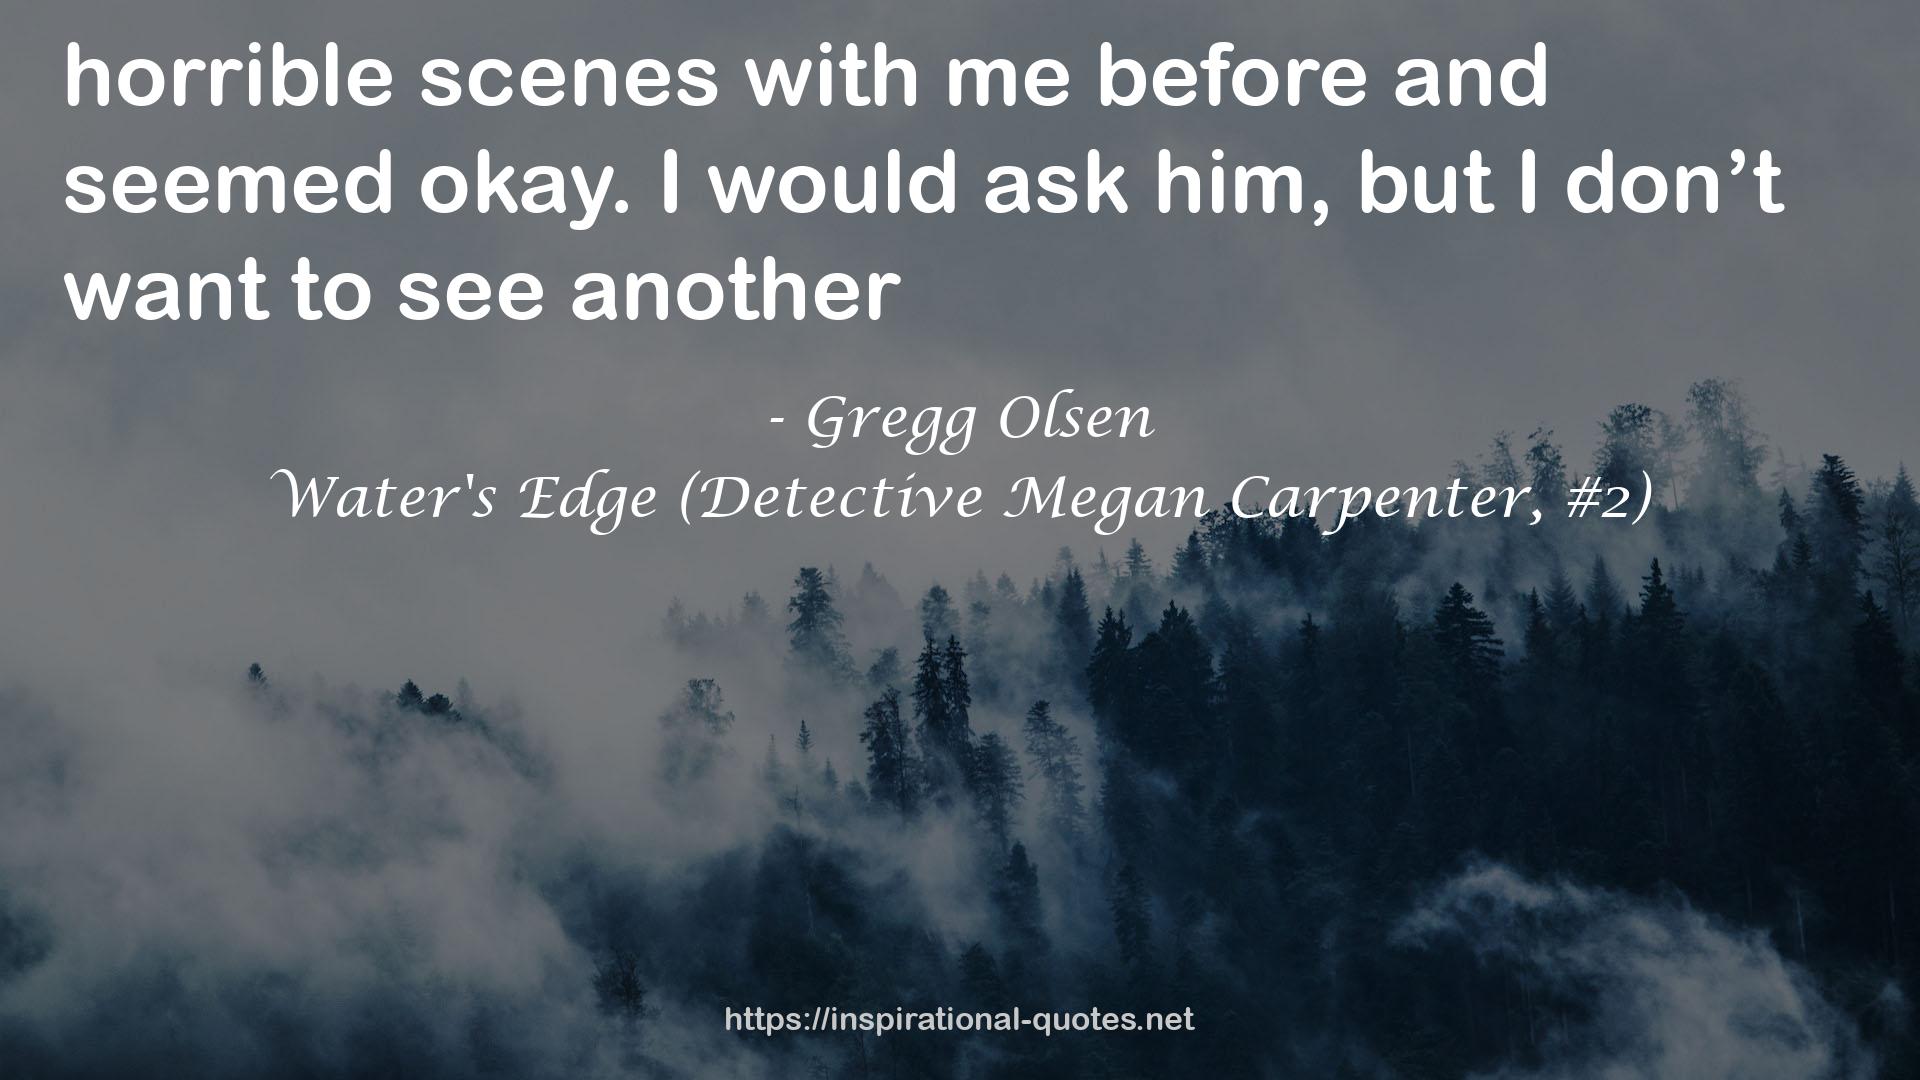 Water's Edge (Detective Megan Carpenter, #2) QUOTES